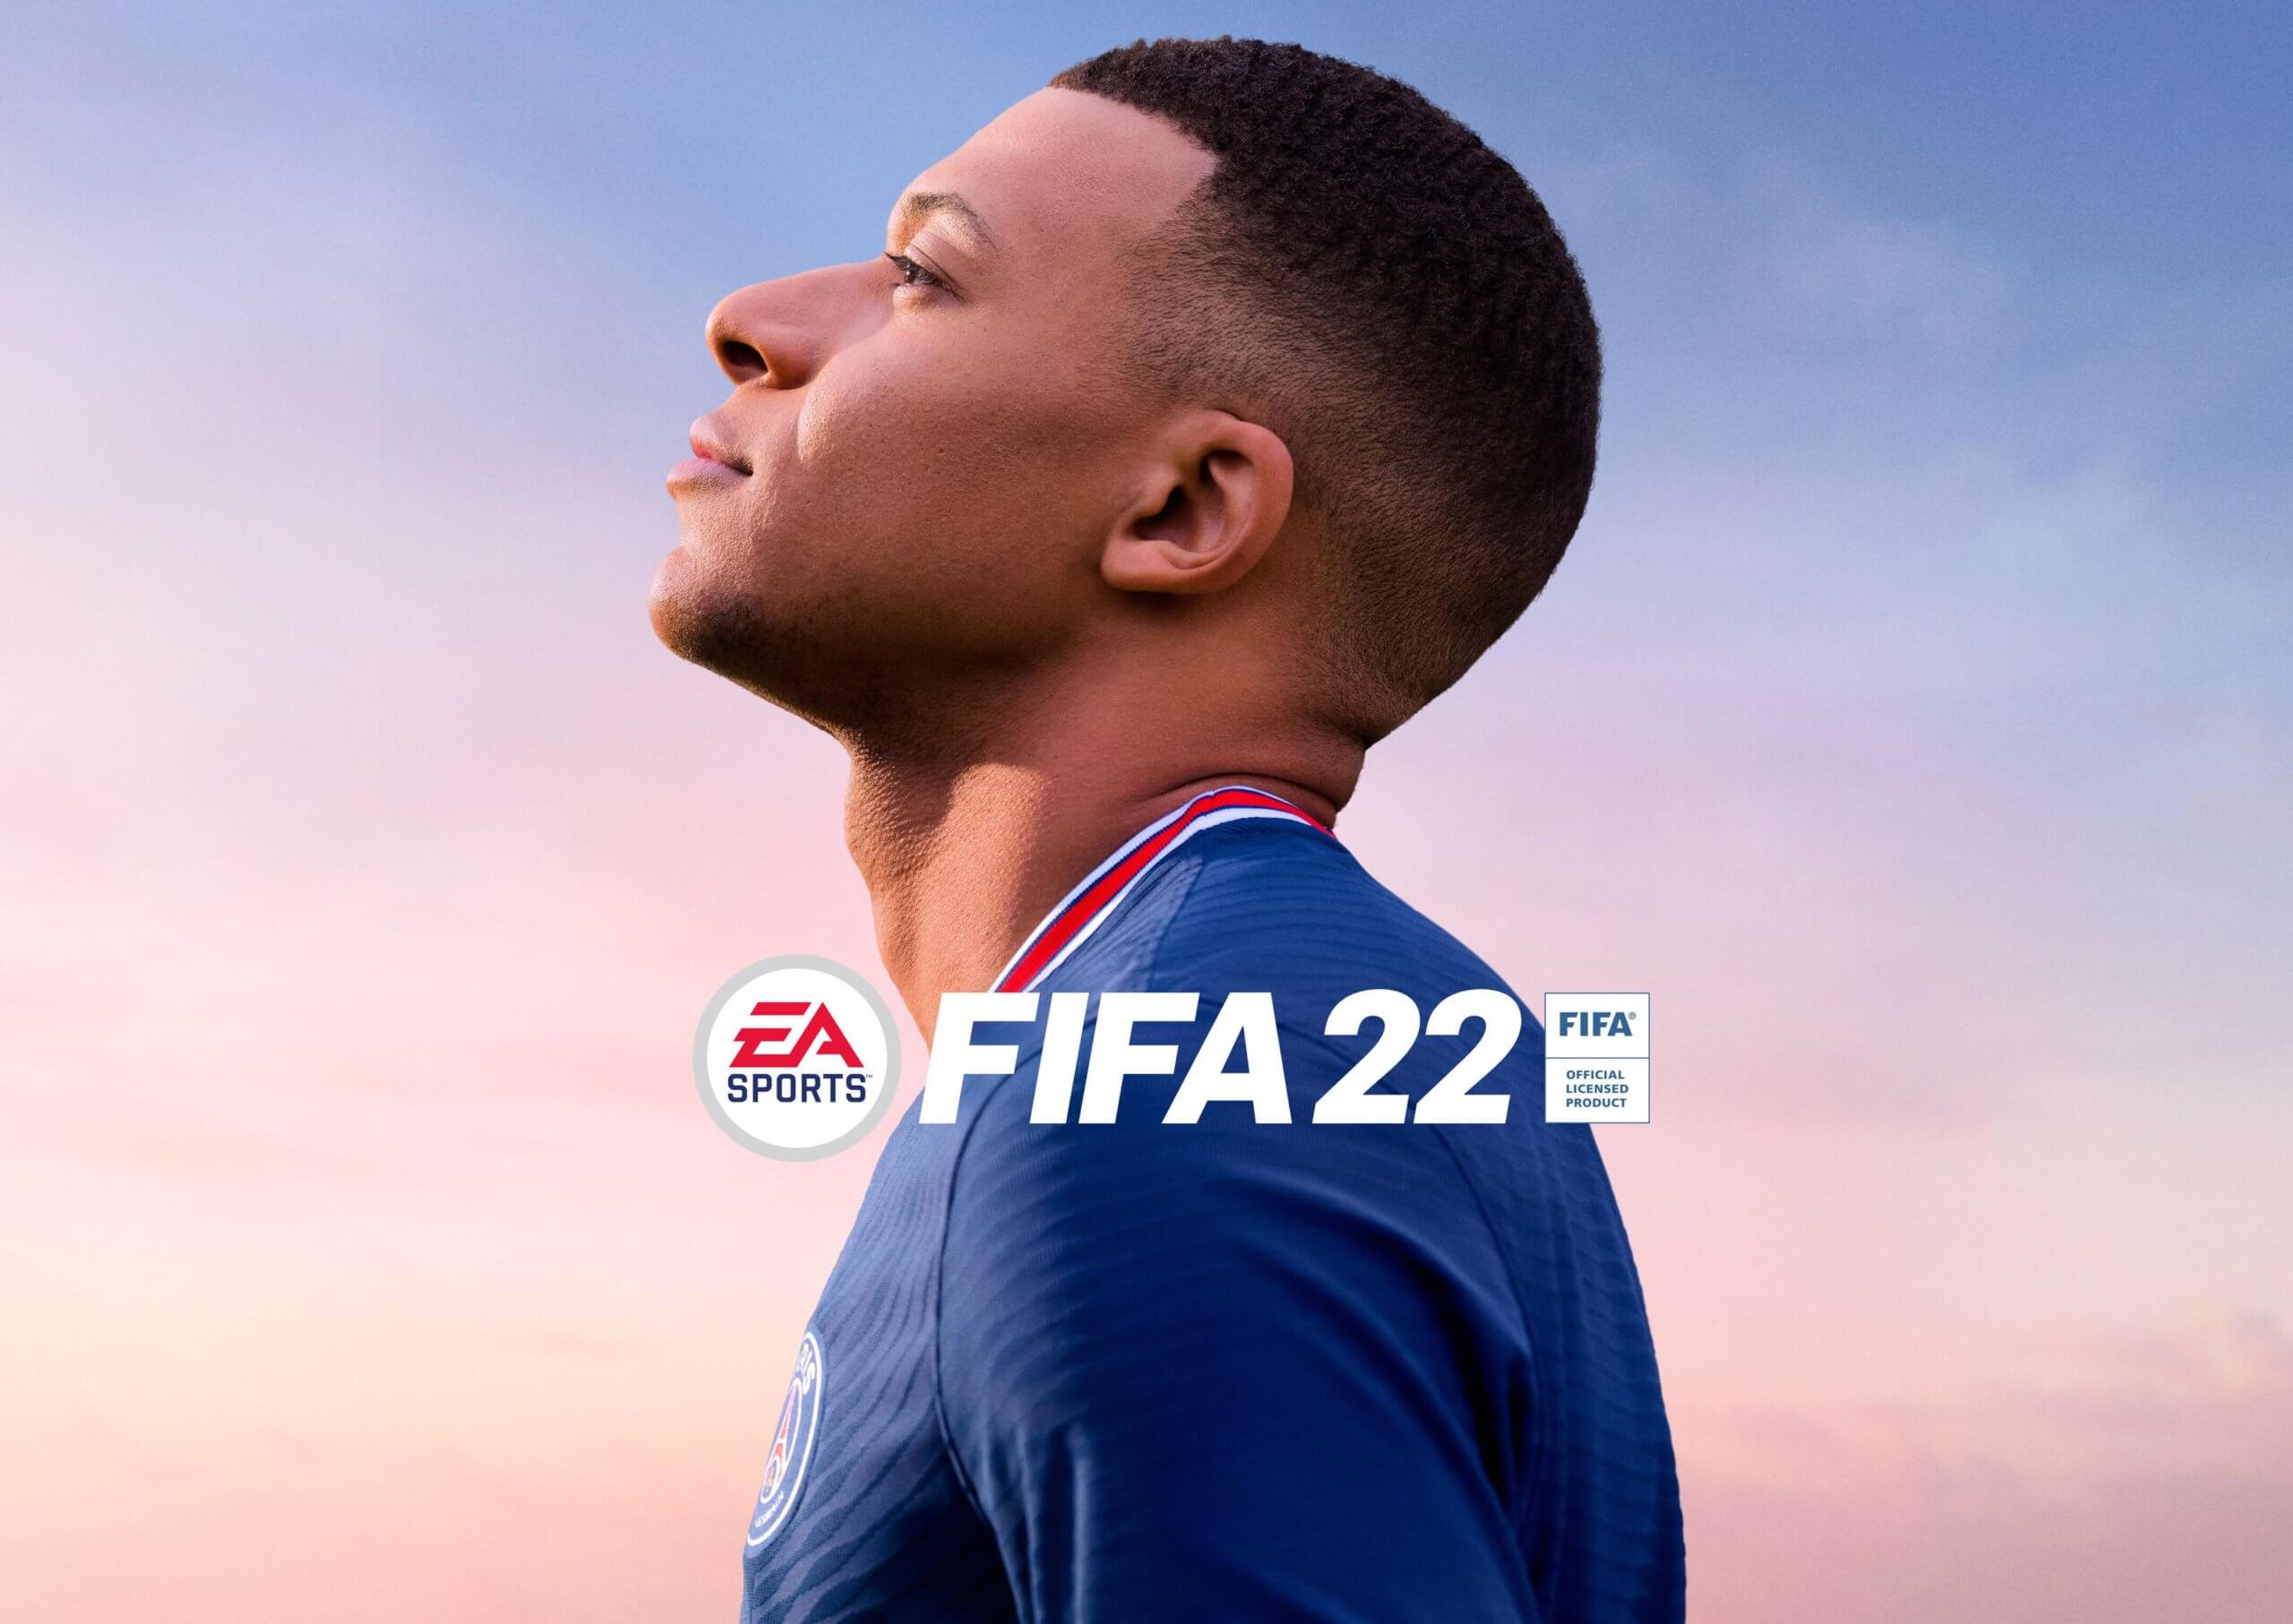 Kylian Mbappé es la estrella de la portada de FIFA 22